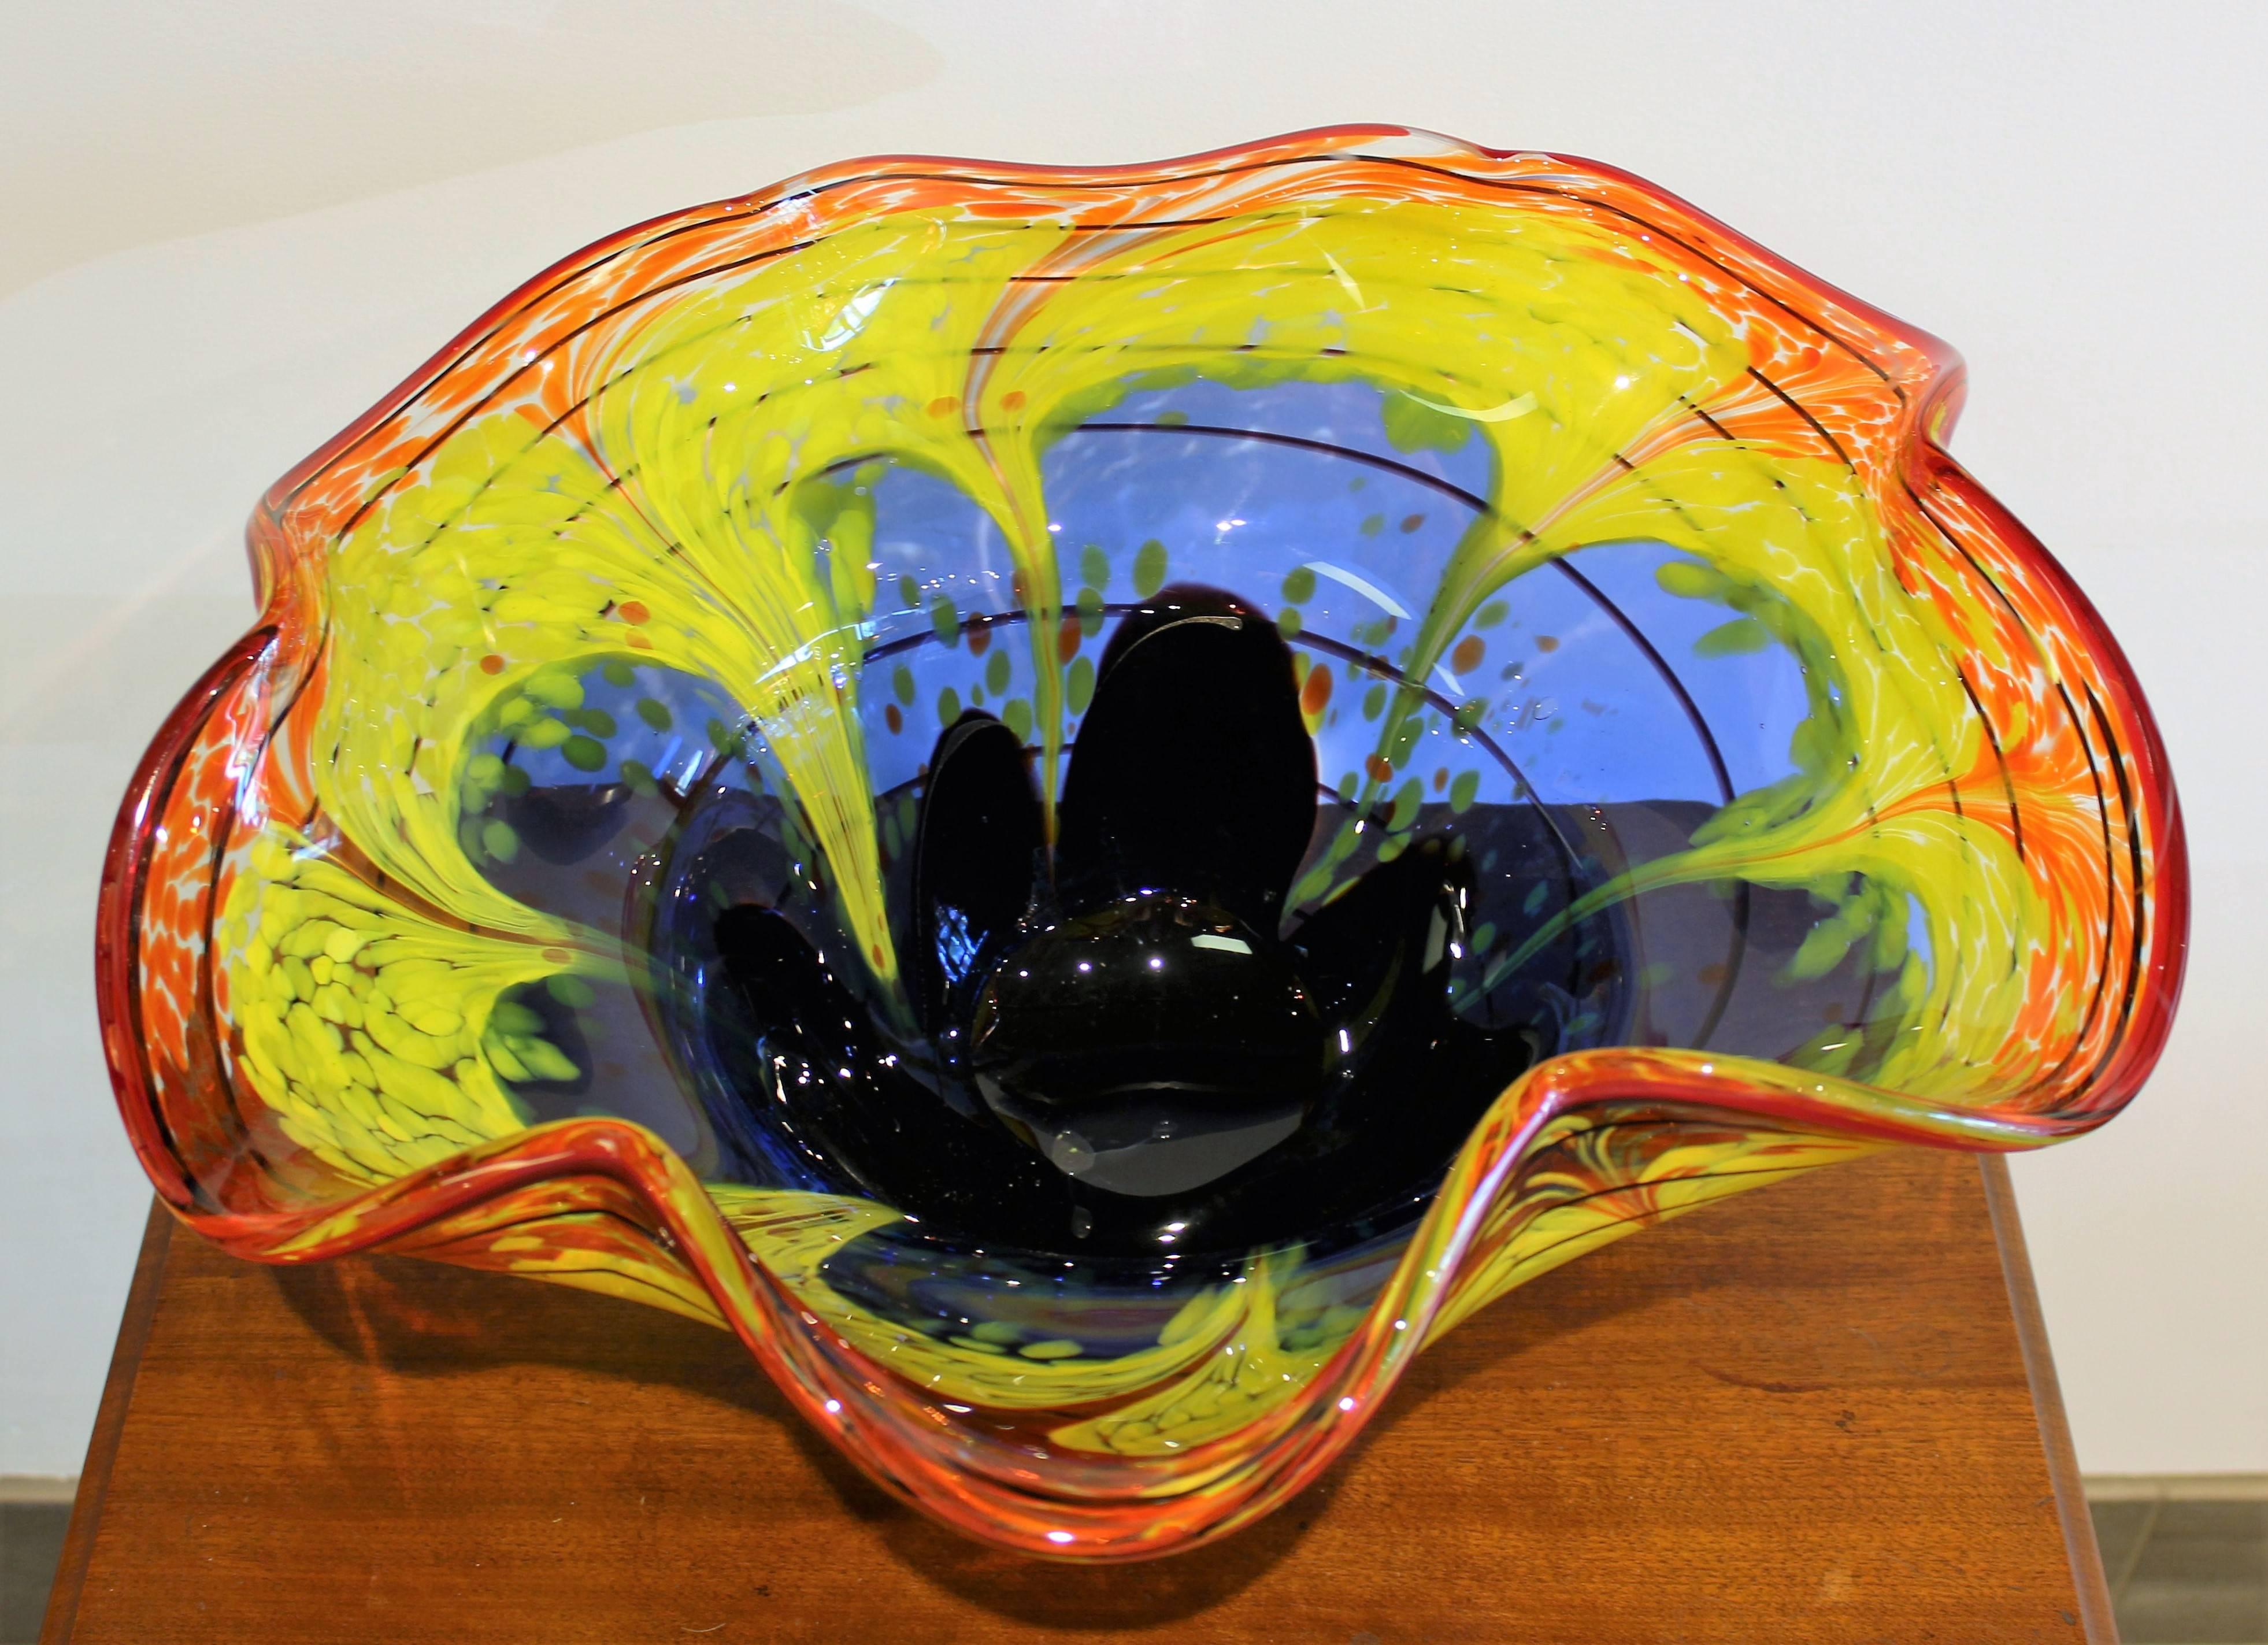 Four Sergio Rossi 'Seaform' vase's for Murano.

Measurements:
Purple vase: 
19